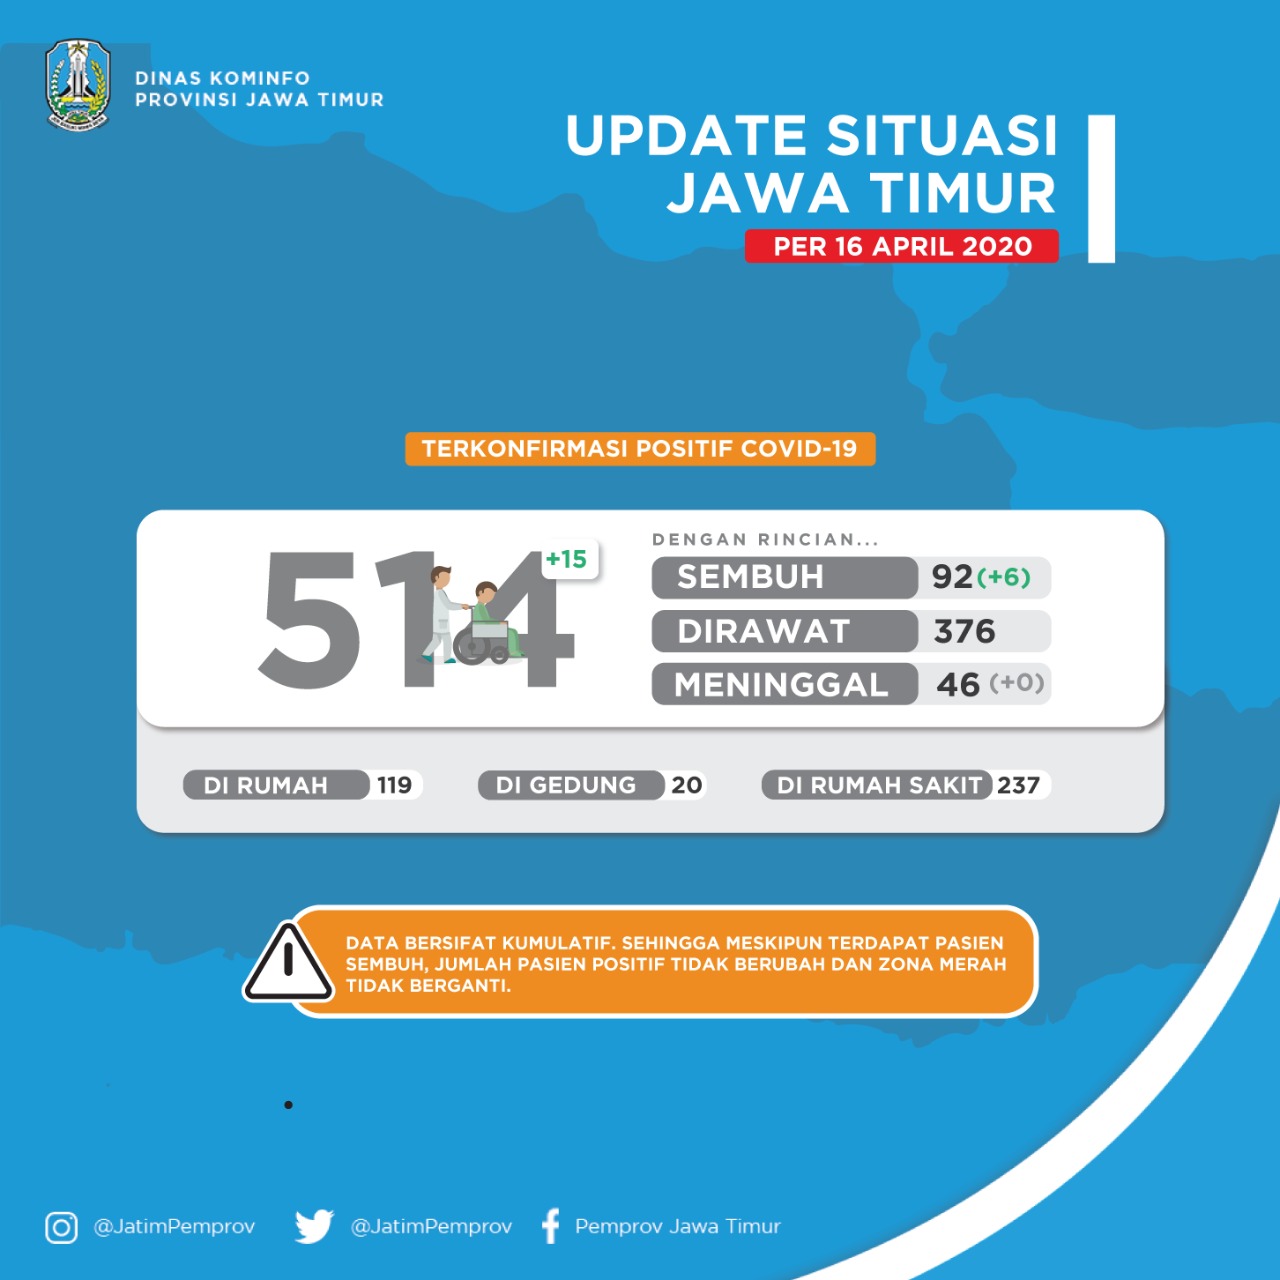 Data persebaran pasien di Jawa Timur. (Foto: pemprov jatim)